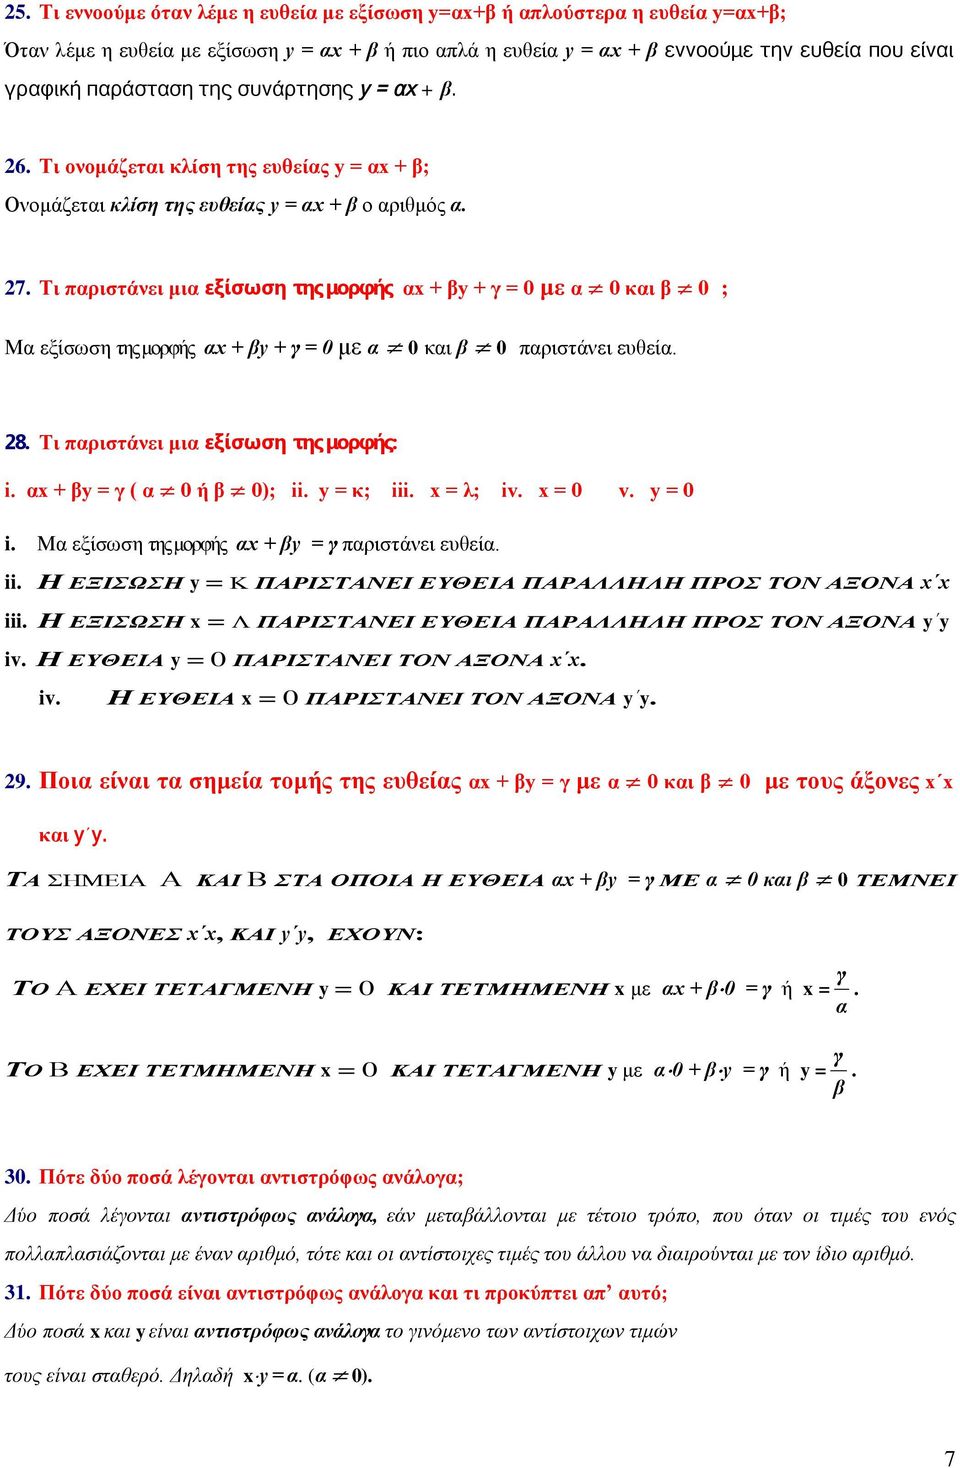 Τι παριστάνει μια εξίσωση της μορφής αx + βy + γ = 0 με α 0 και β 0 ; Μα εξίσωση της μορφής αx + βy + γ = 0 με α 0 και β 0 παριστάνει ευθεία. 8. Τι παριστάνει μια εξίσωση της μορφής: i.